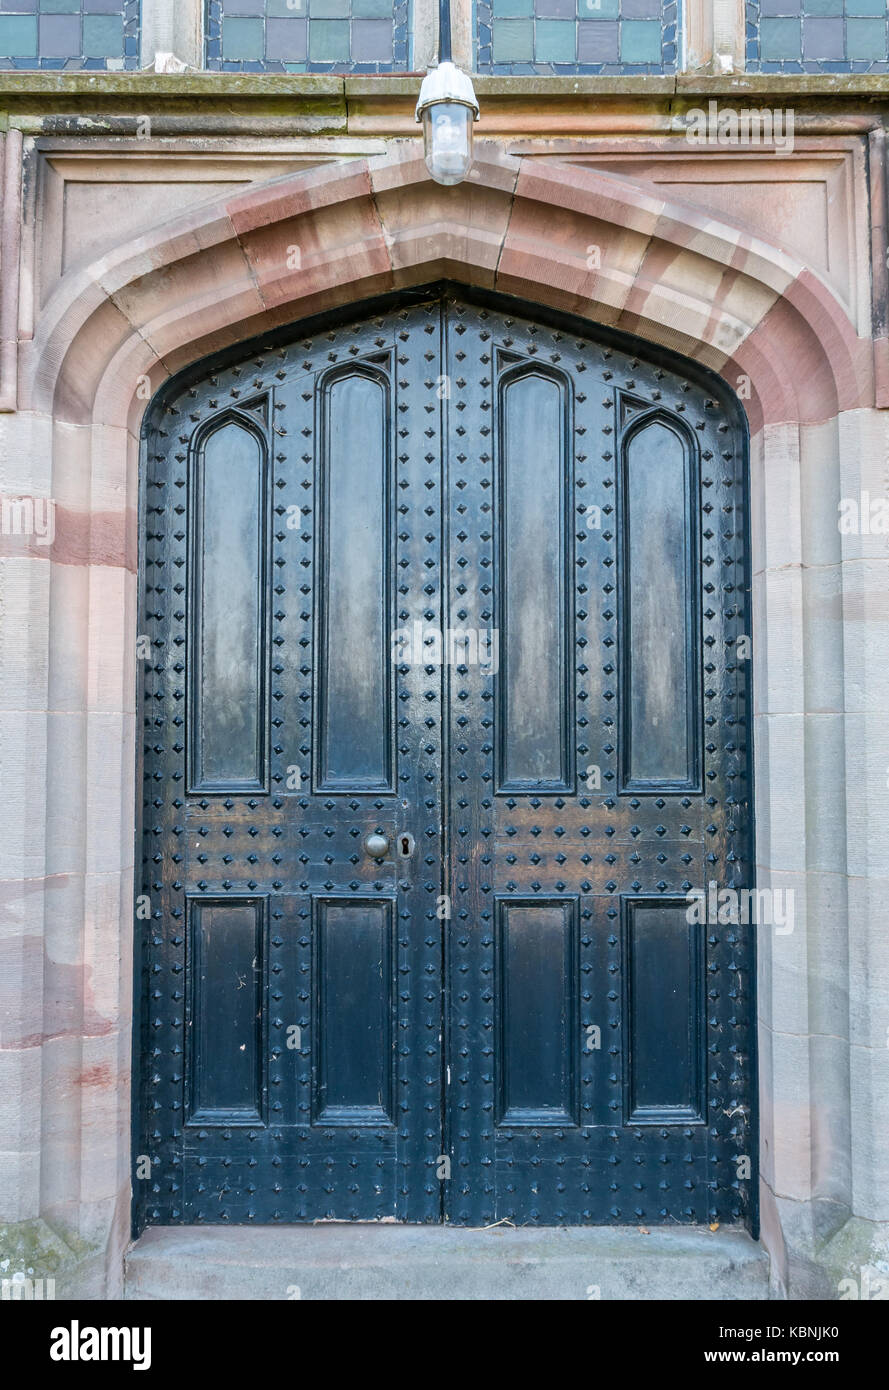 Détail de l'entrée à double porte cloutée Stenton église paroissiale, East Lothian, Scotland, UK Banque D'Images